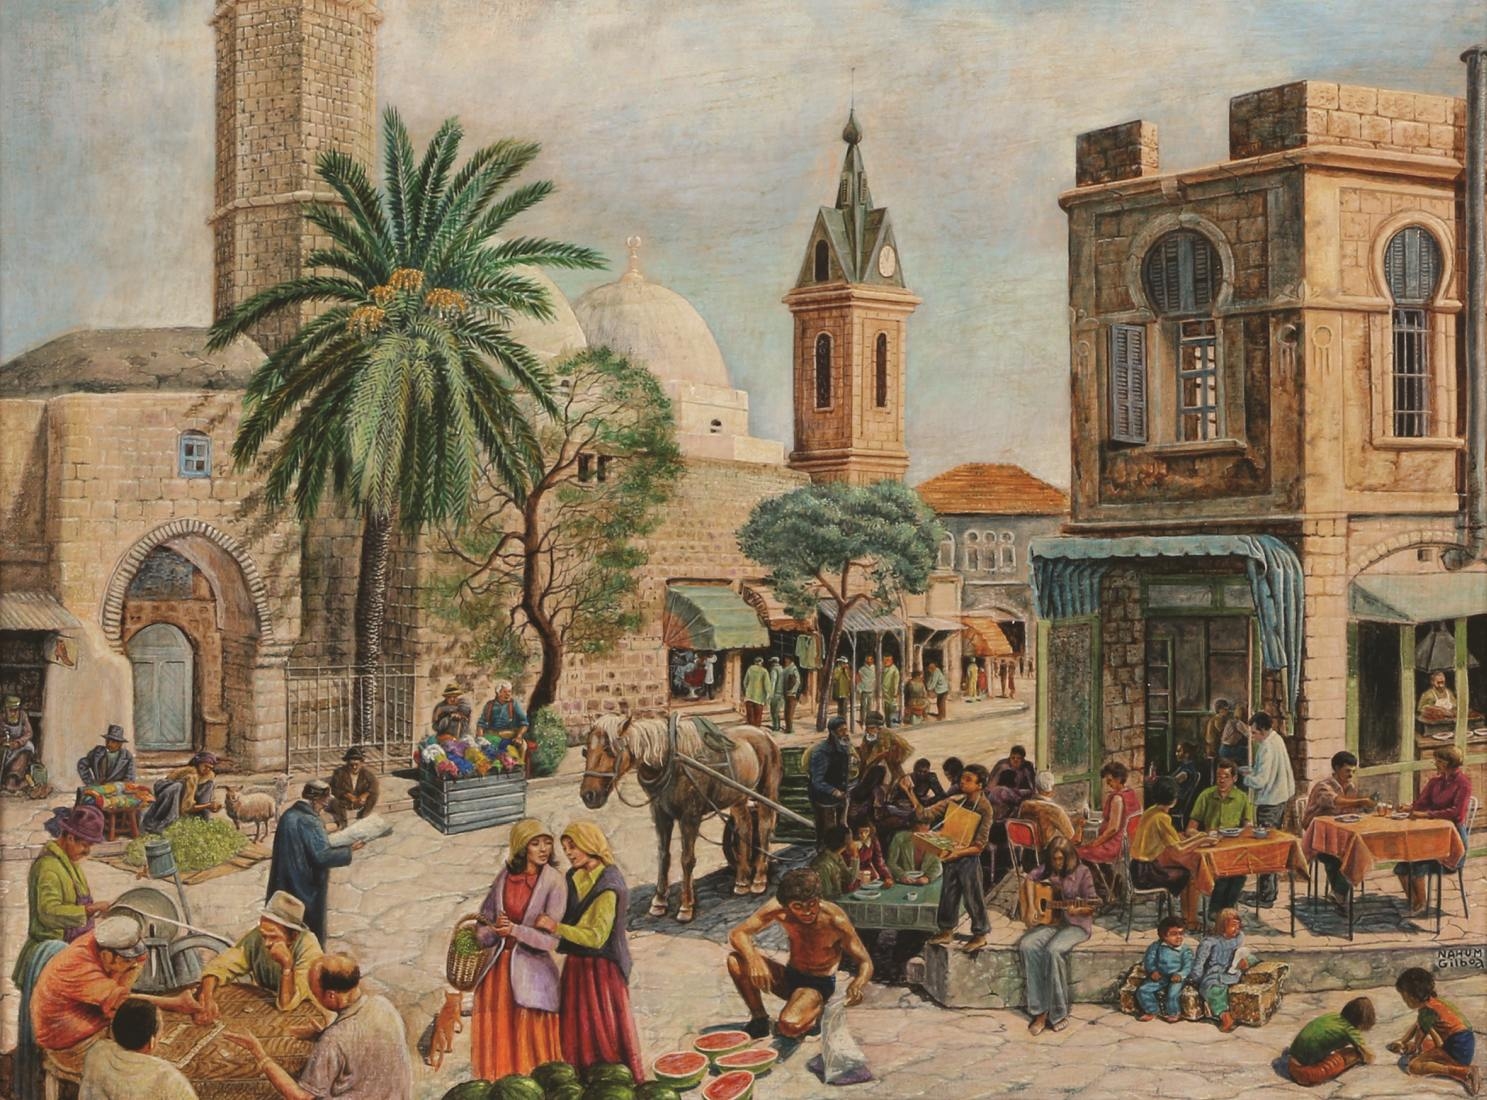 Jaffa by Nahum Gilboa